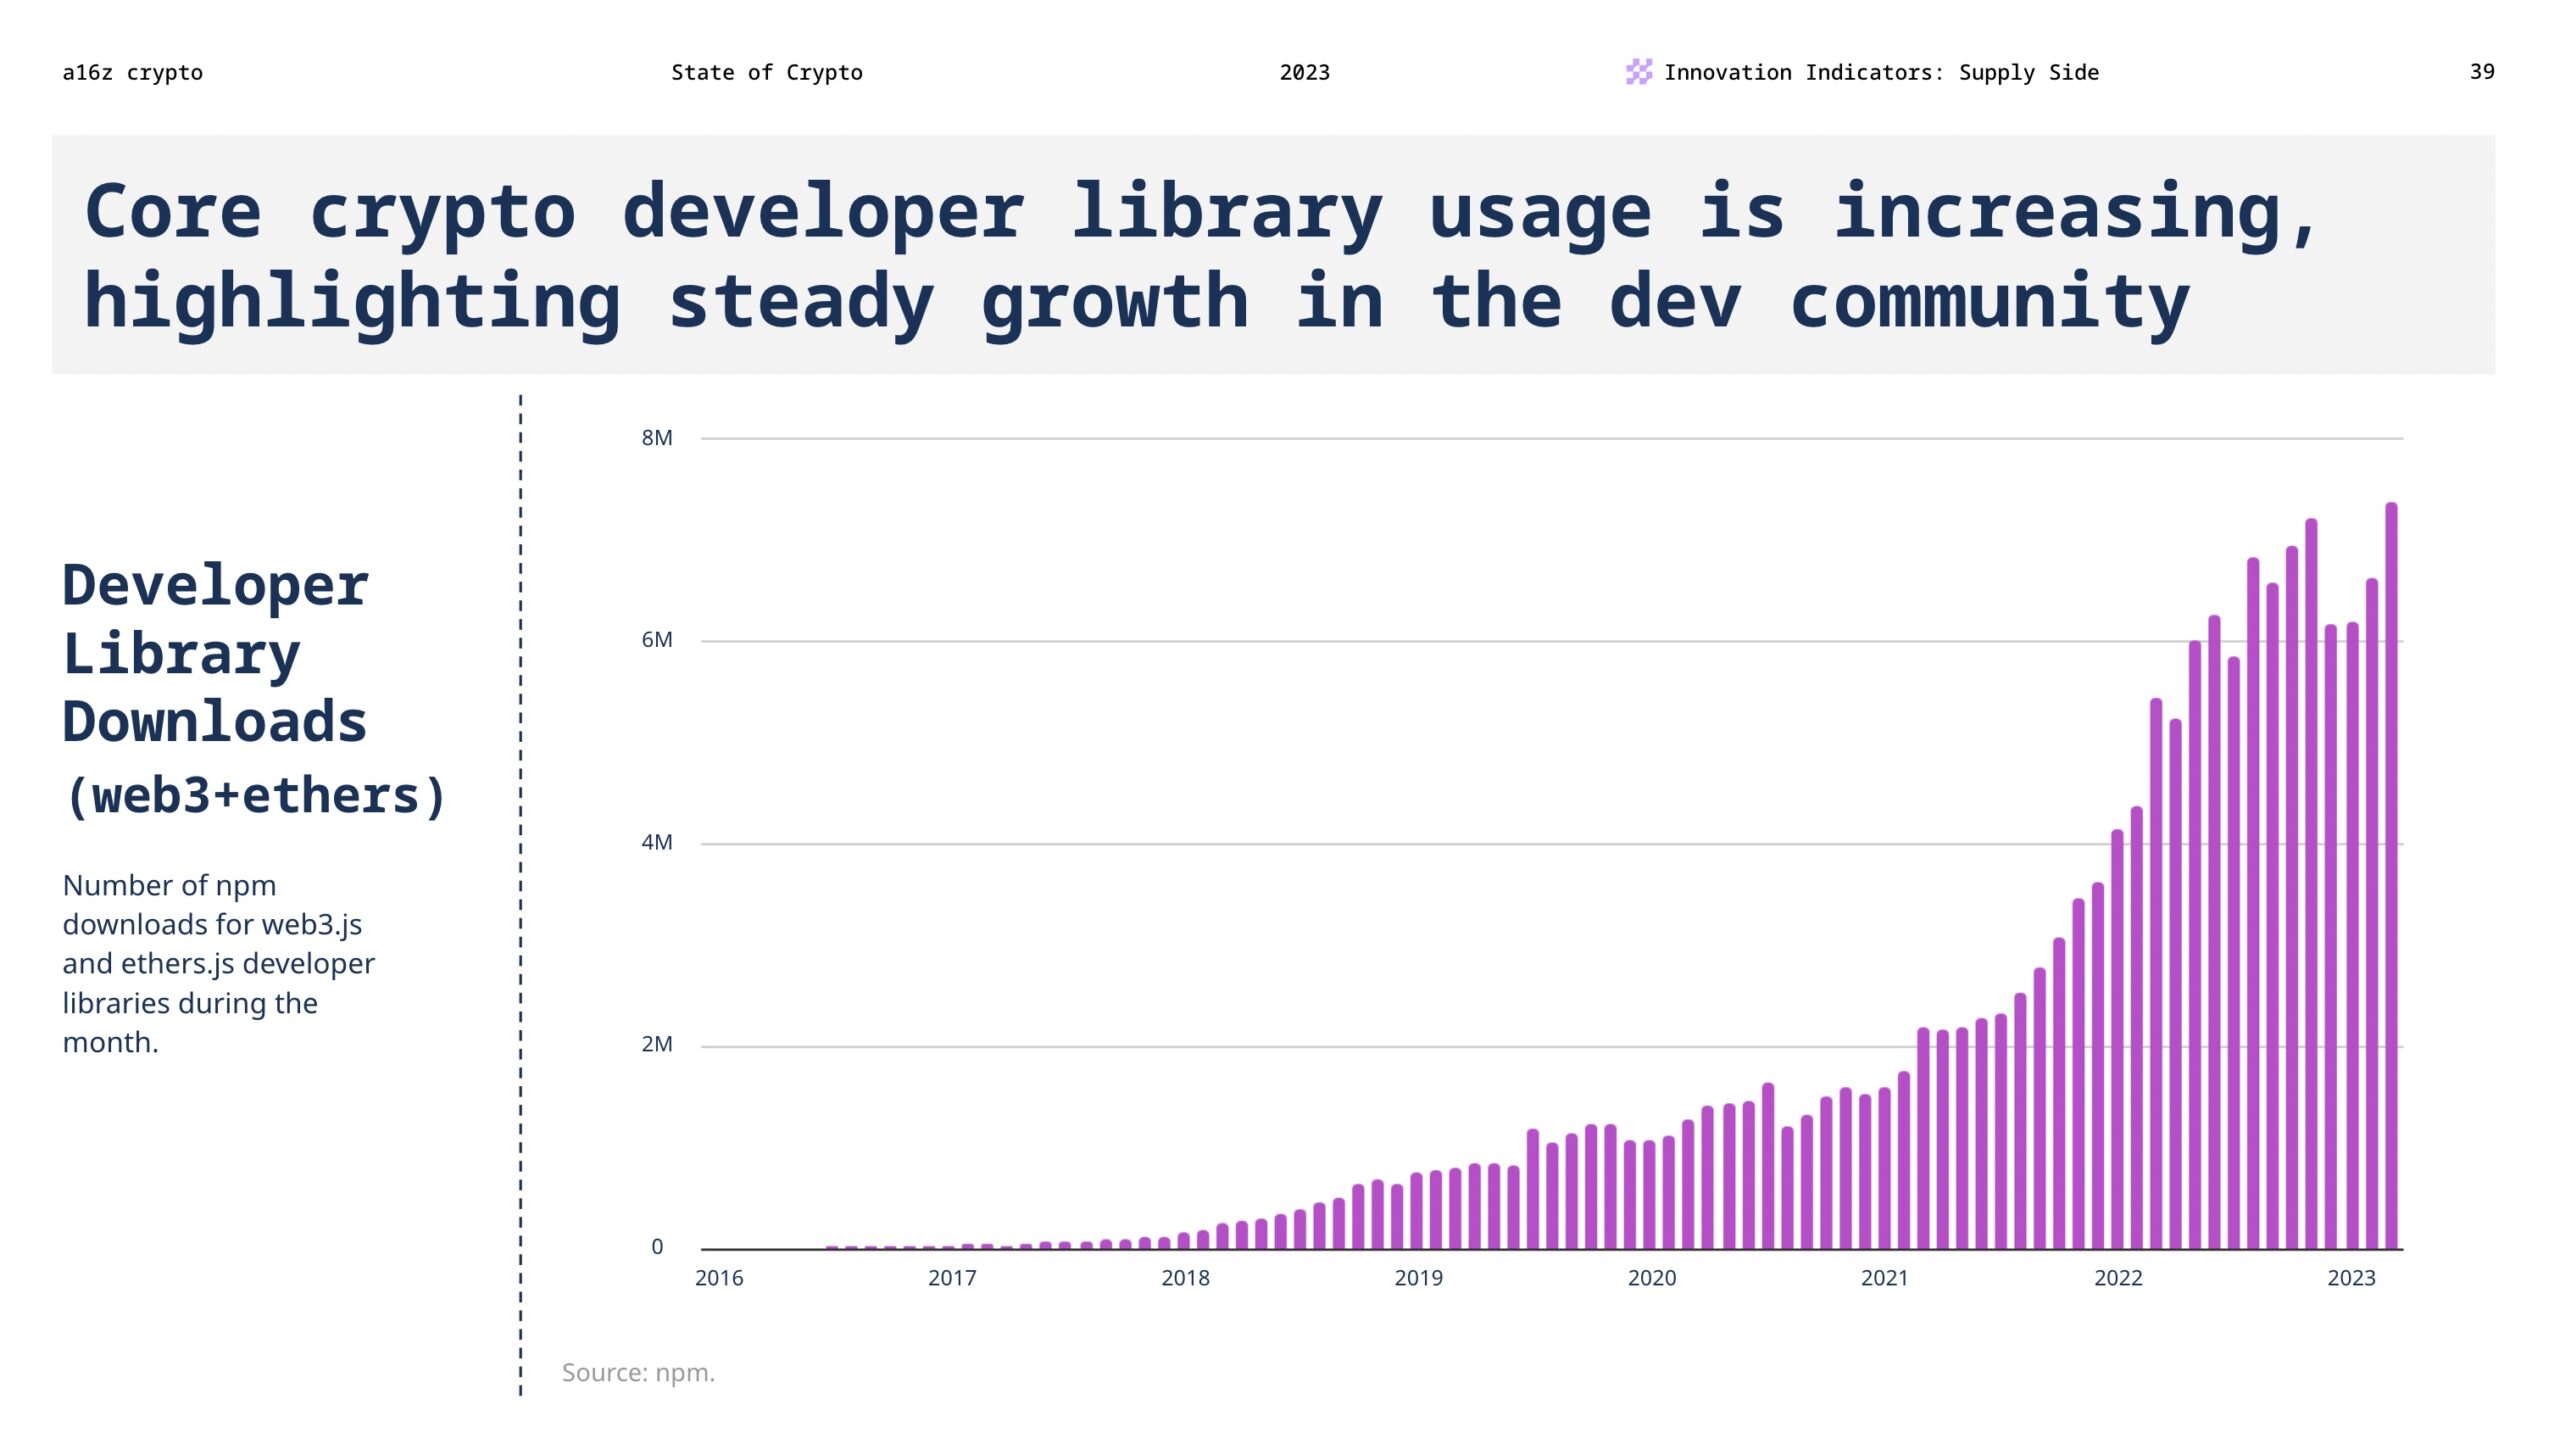 L'utilisation de la bibliothèque principale des développeurs de chiffrement augmente, soulignant la croissance constante de la communauté